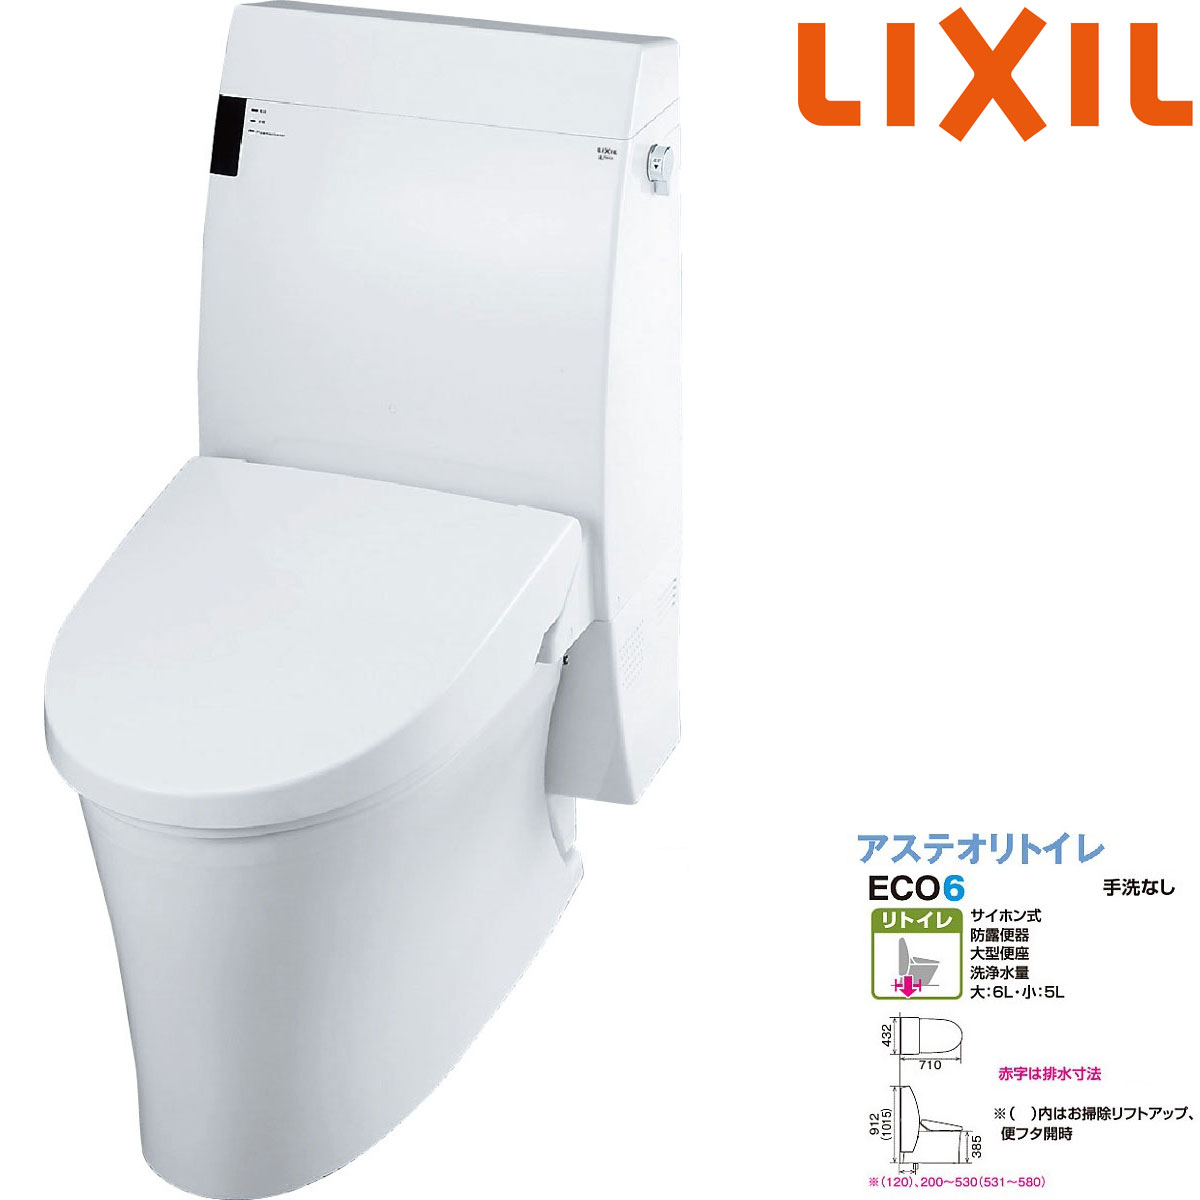 LIXIL INAX アステオ リトイレ 手洗なし YBC-A10H + DT-356JH (トイレ 